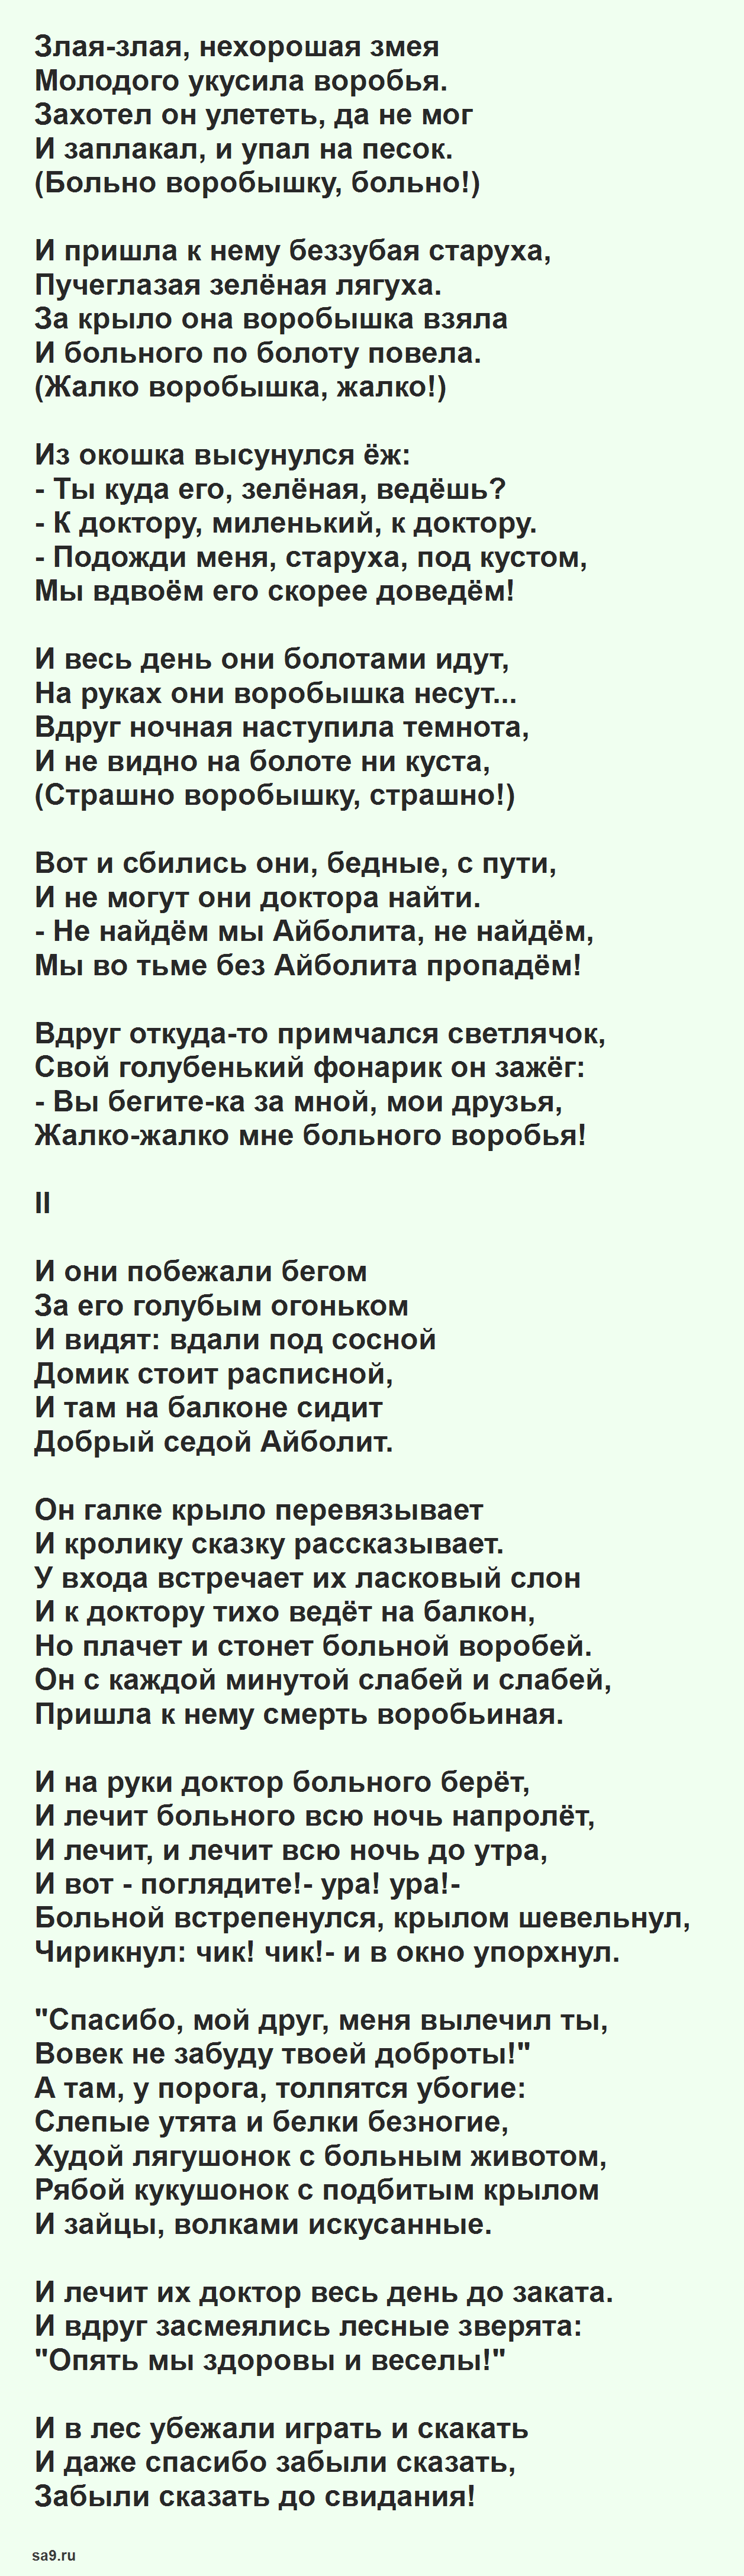 Чуковский стихи - Айболит и воробей